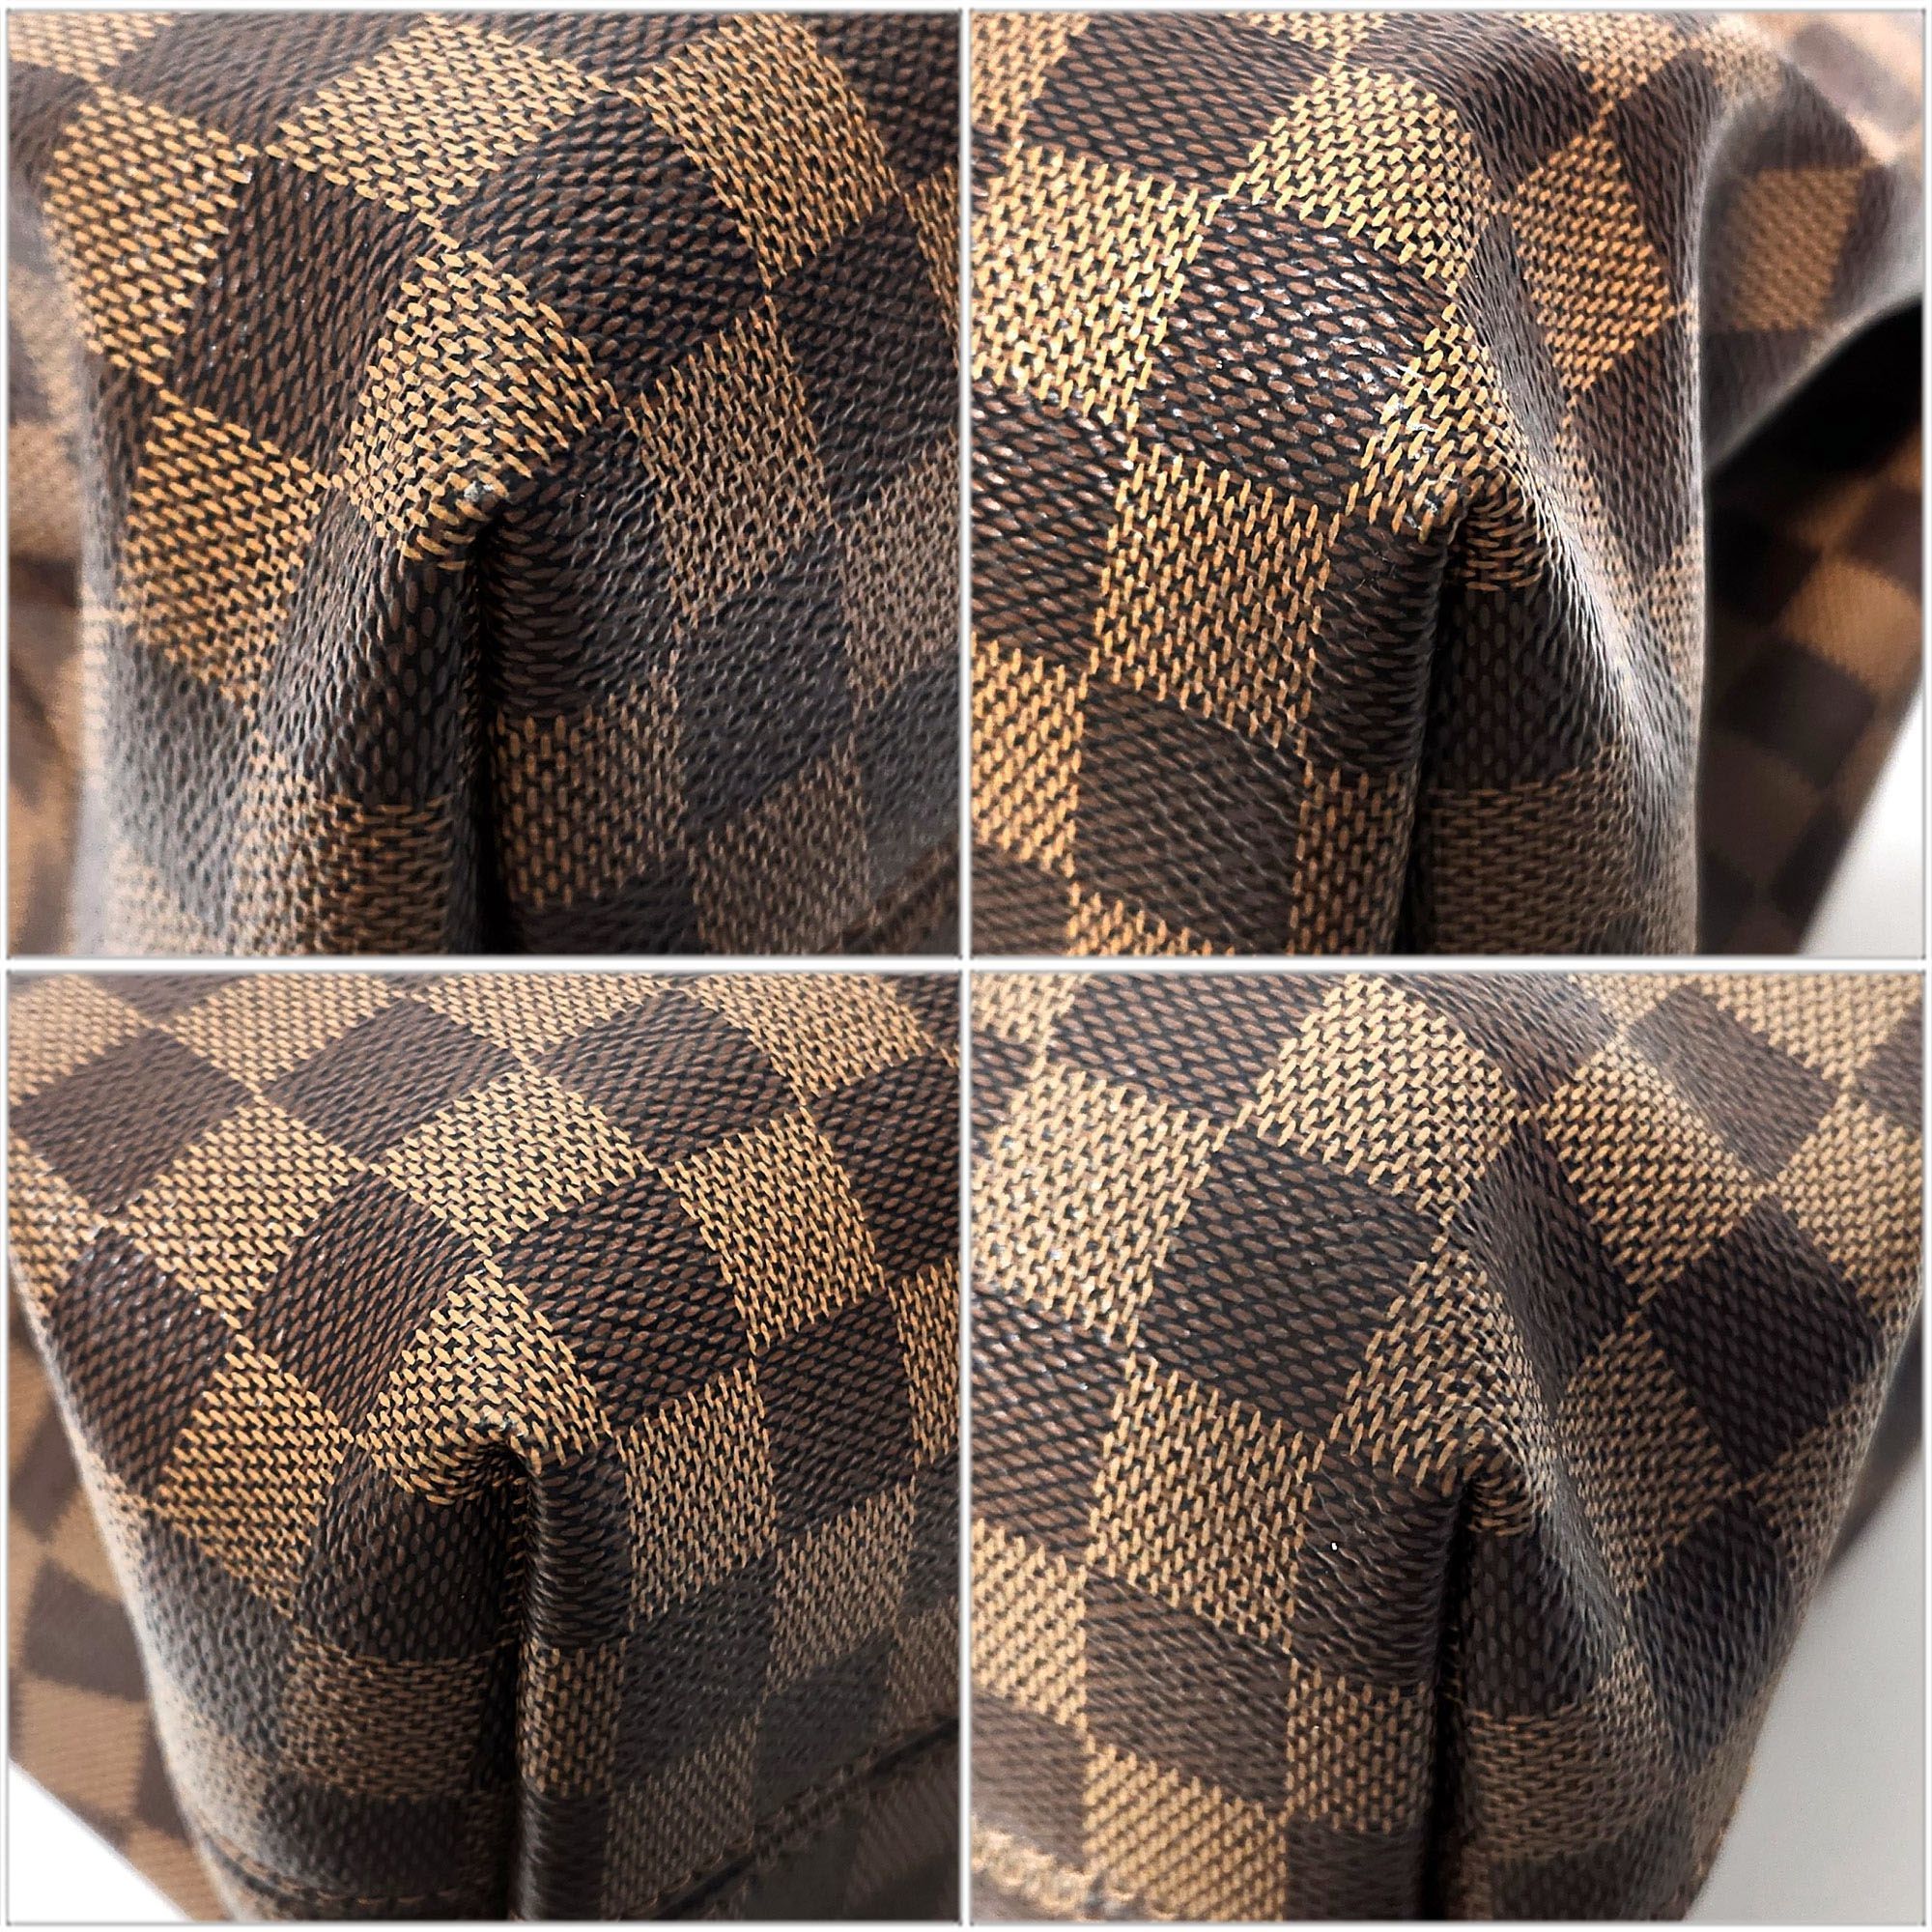 Louis Vuitton LOUISVUITTON Damier Ebene Graceful PM N44044 Shoulder Bag Women's Back VUITTON